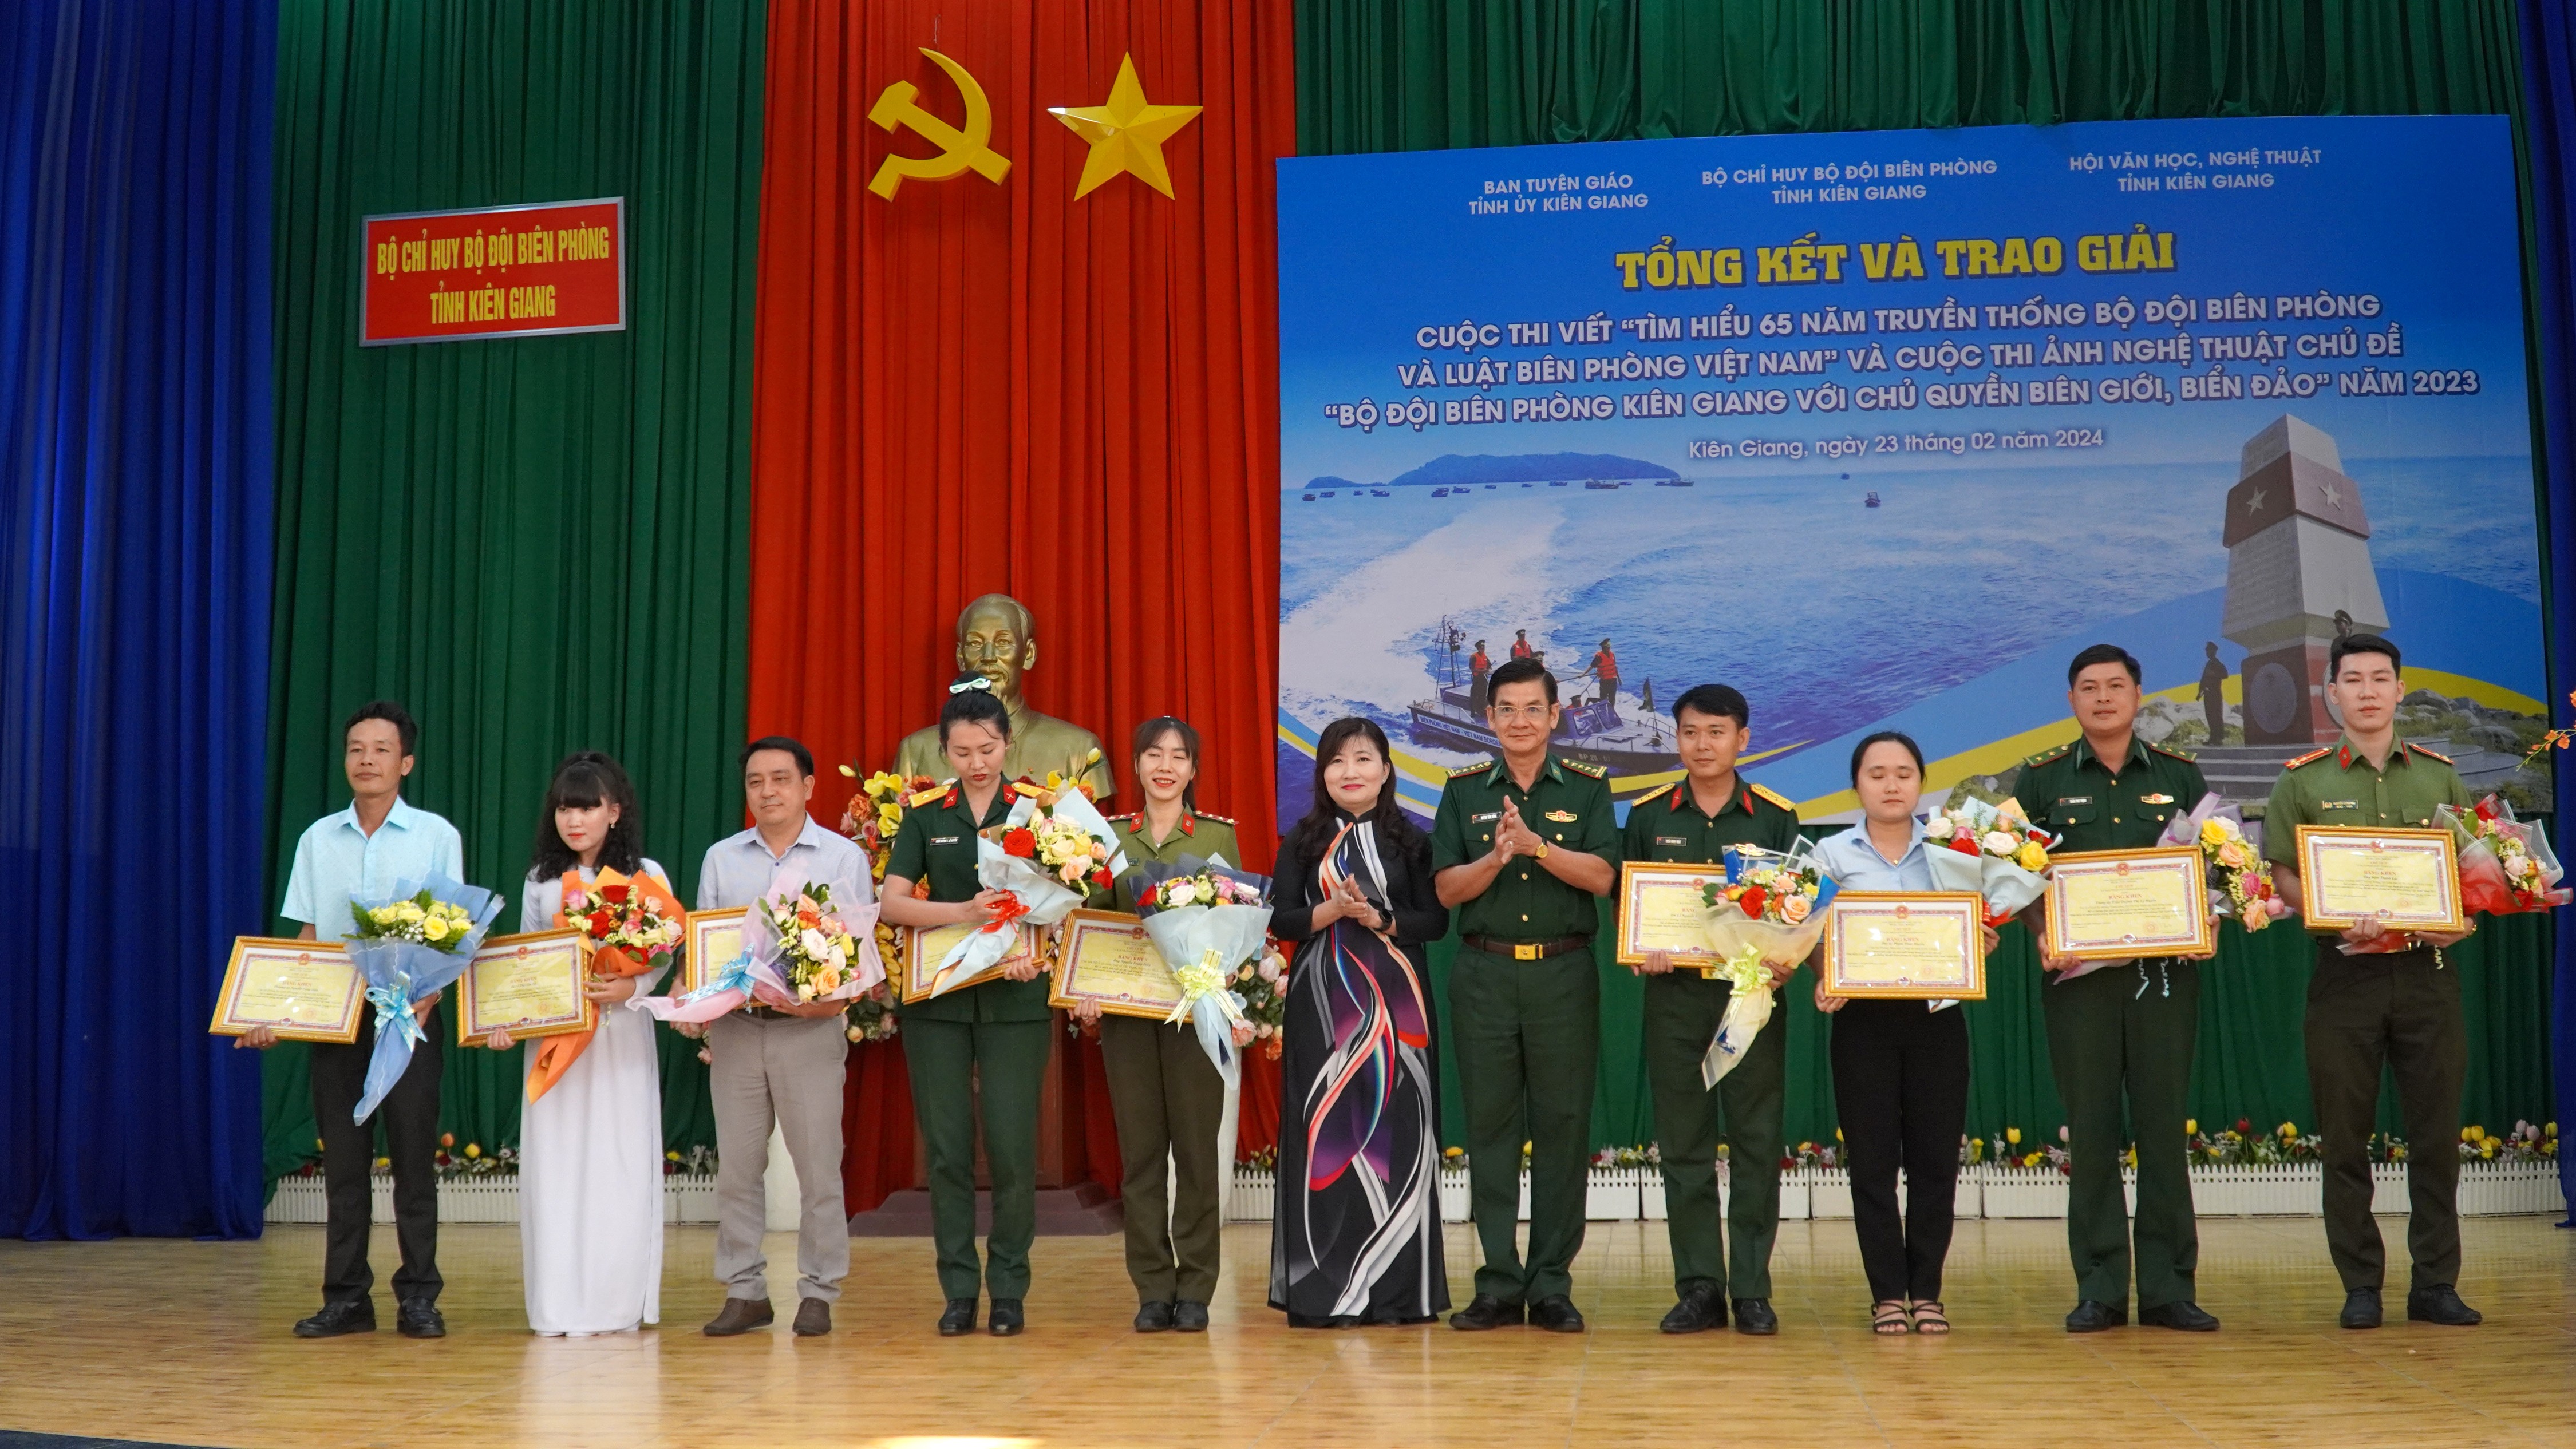 Toàn cảnh - Trao giải 2 cuộc thi về Bộ đội Biên Phòng Kiên Giang